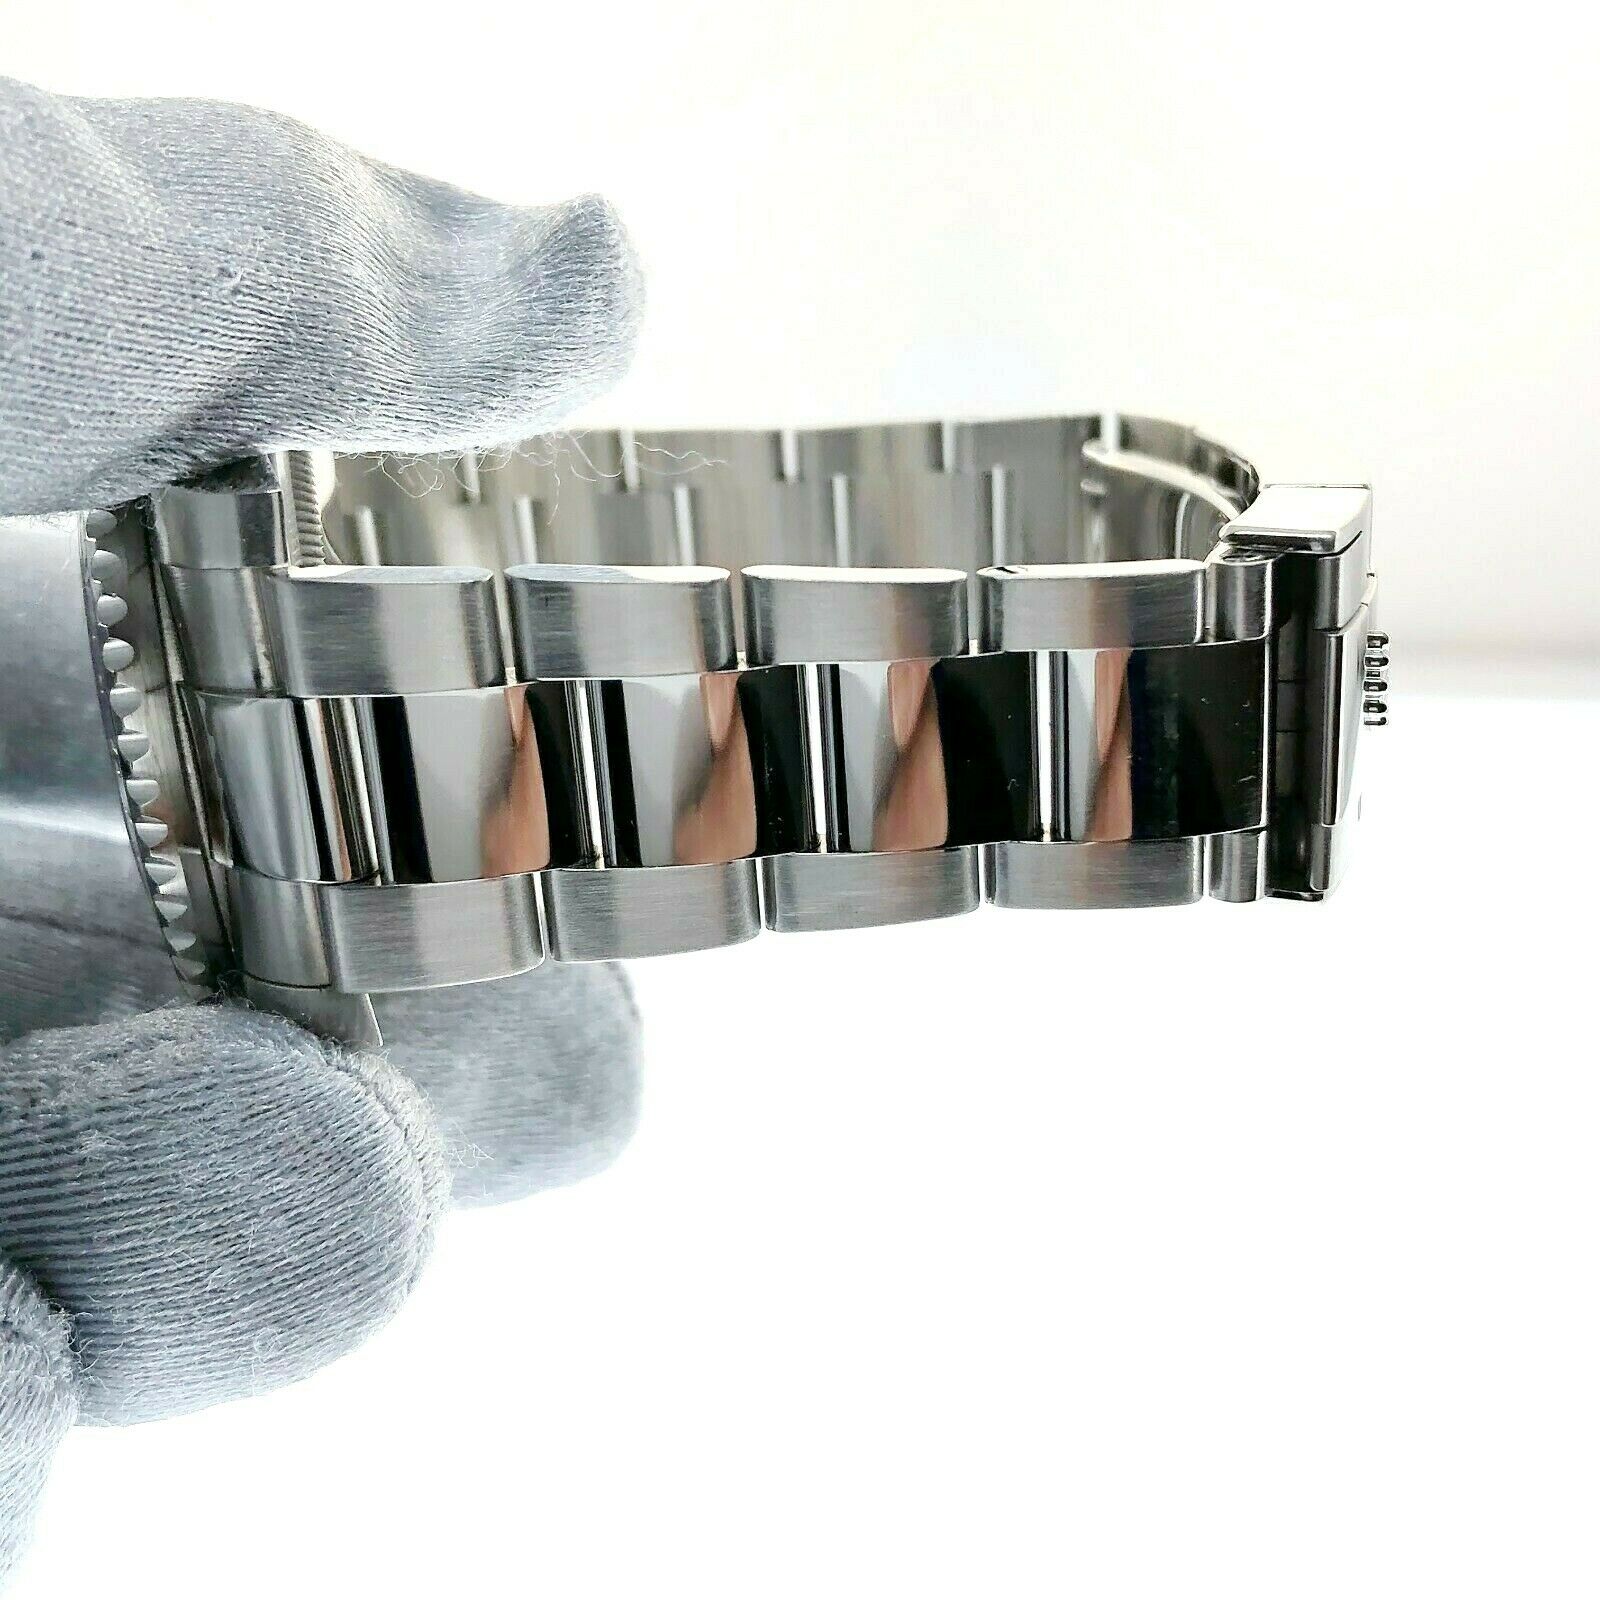 Rolex 40MM Ceramic GMT Master II Batman Stainless Steel Watch Ref 116710BLNR